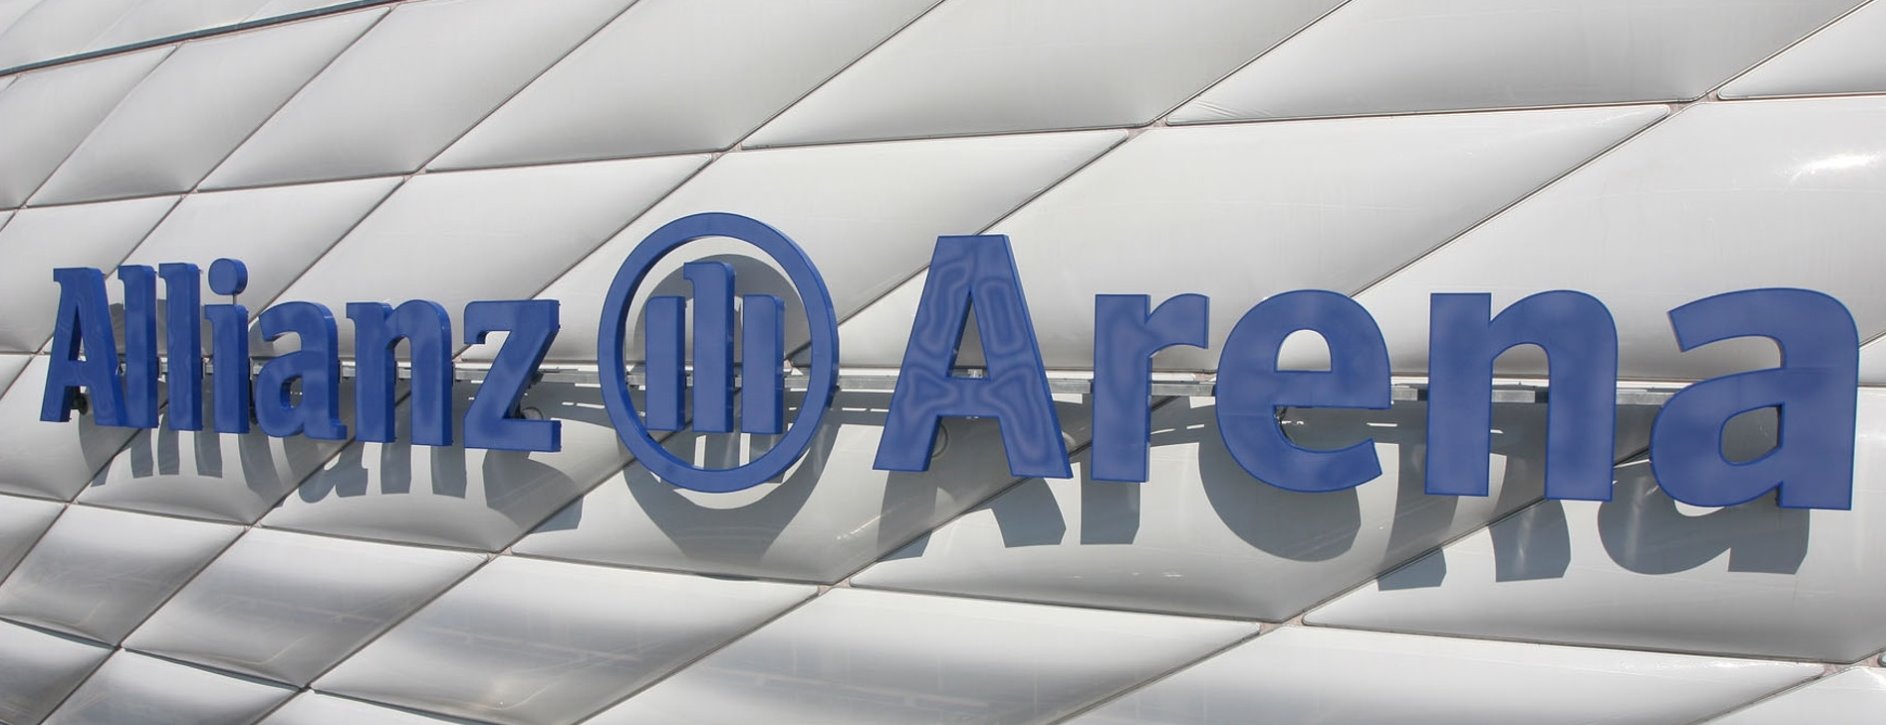 Allianz Versicherung Thorsten Mertz Bürstadt - Unsere Allianz Arena